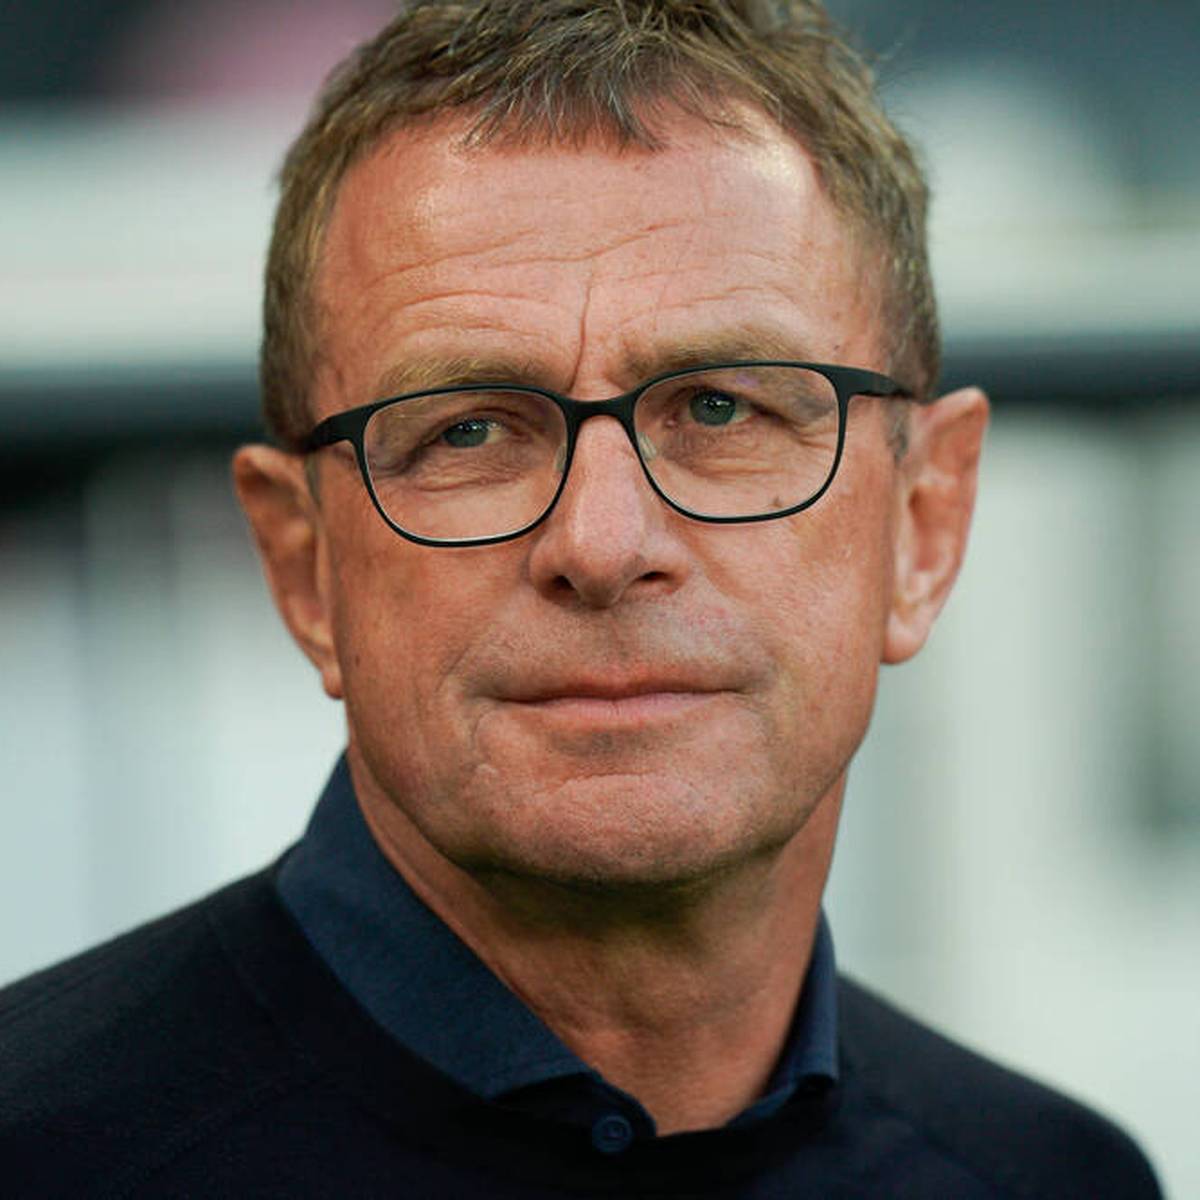 Das Karriereende von Martin Hinteregger hat in der Bundesliga hohe Wellen geschlagen. Nun hat sich Ralf Rangnick geäußert.